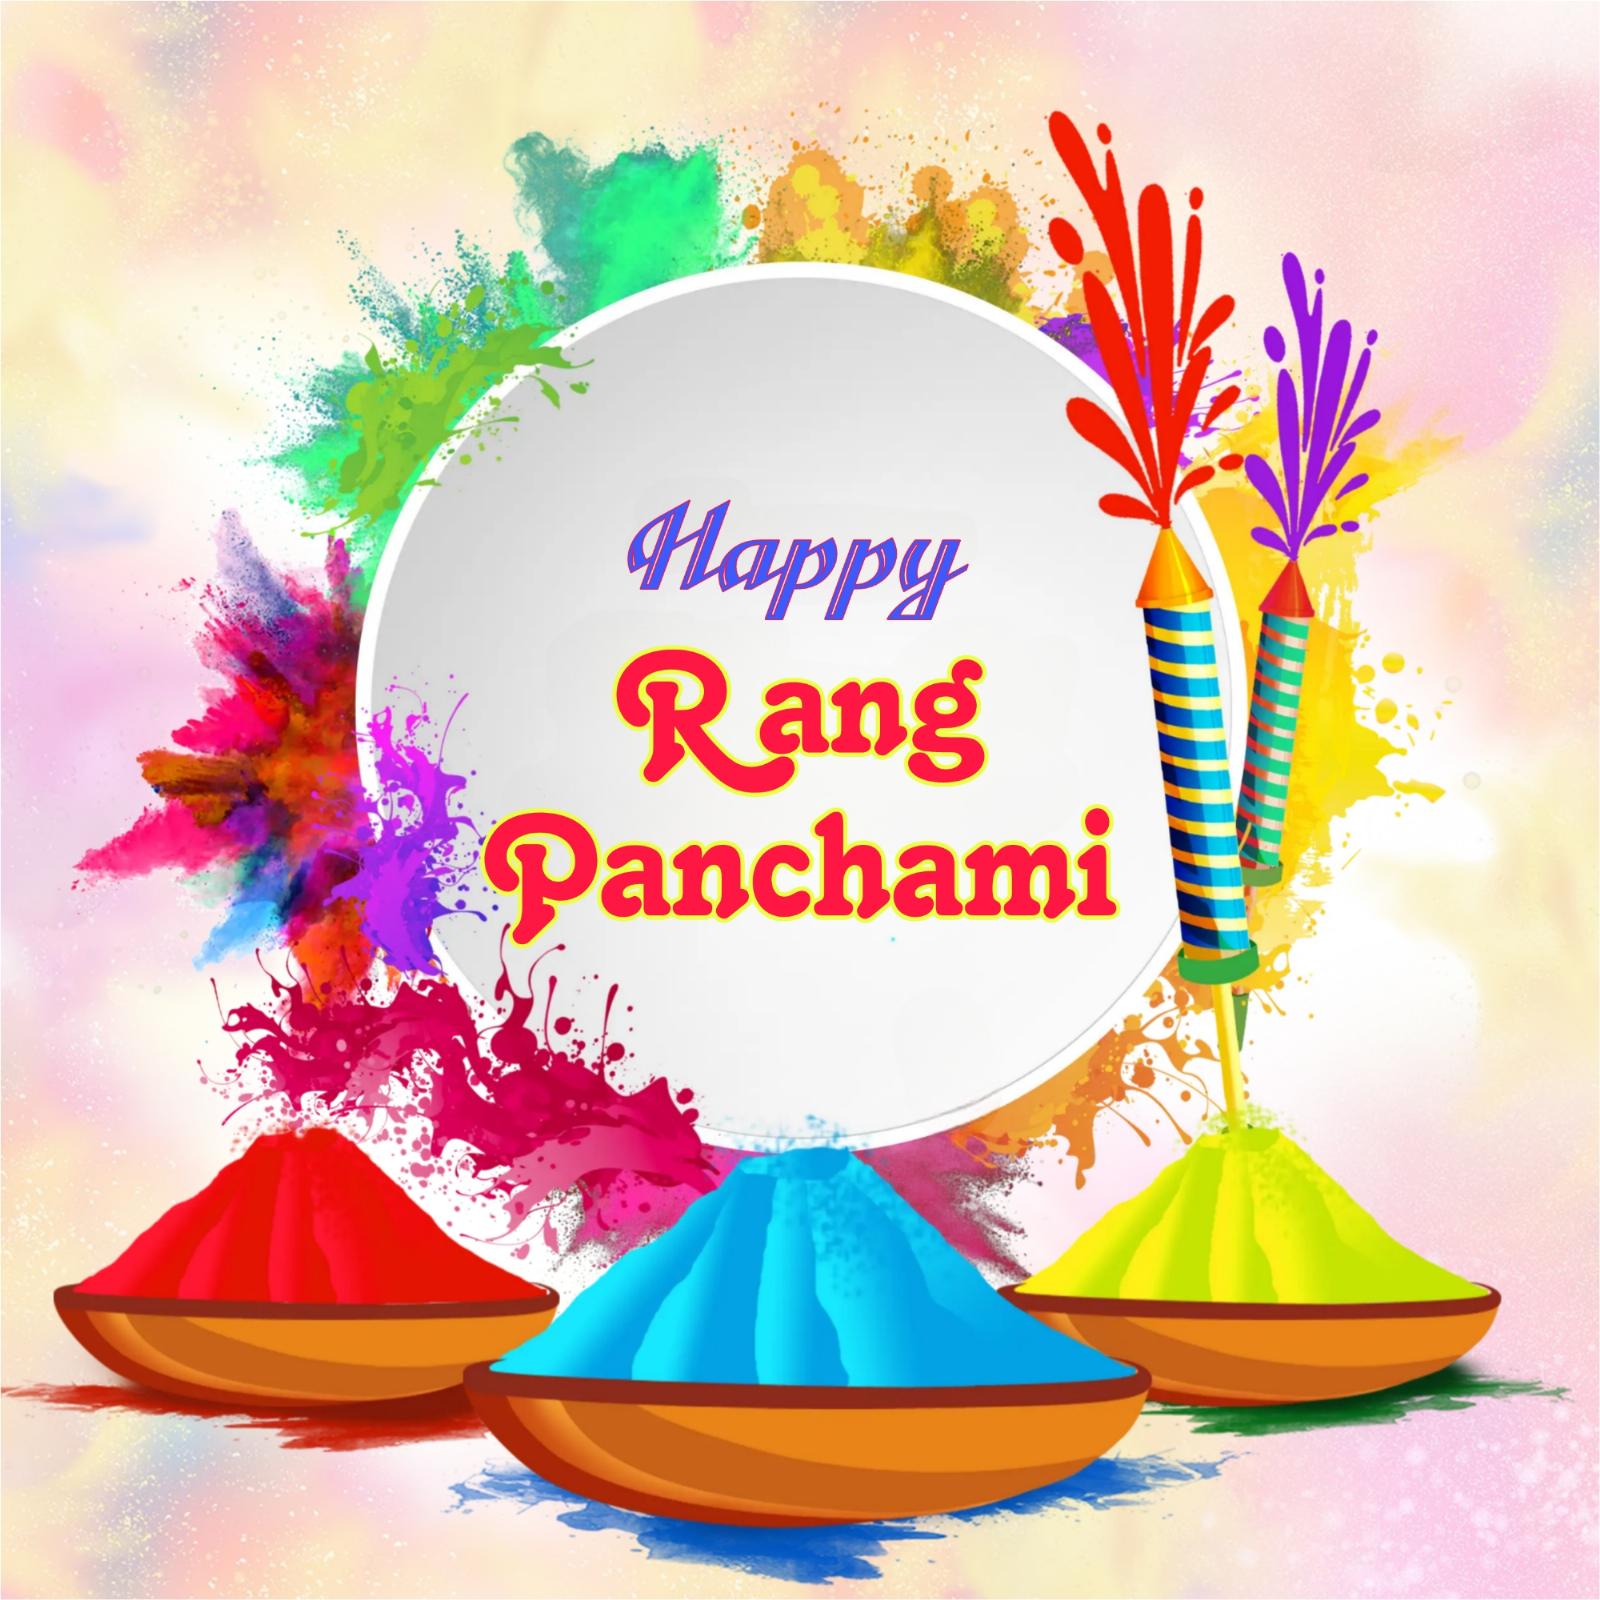 Happy Rang Panchami Images